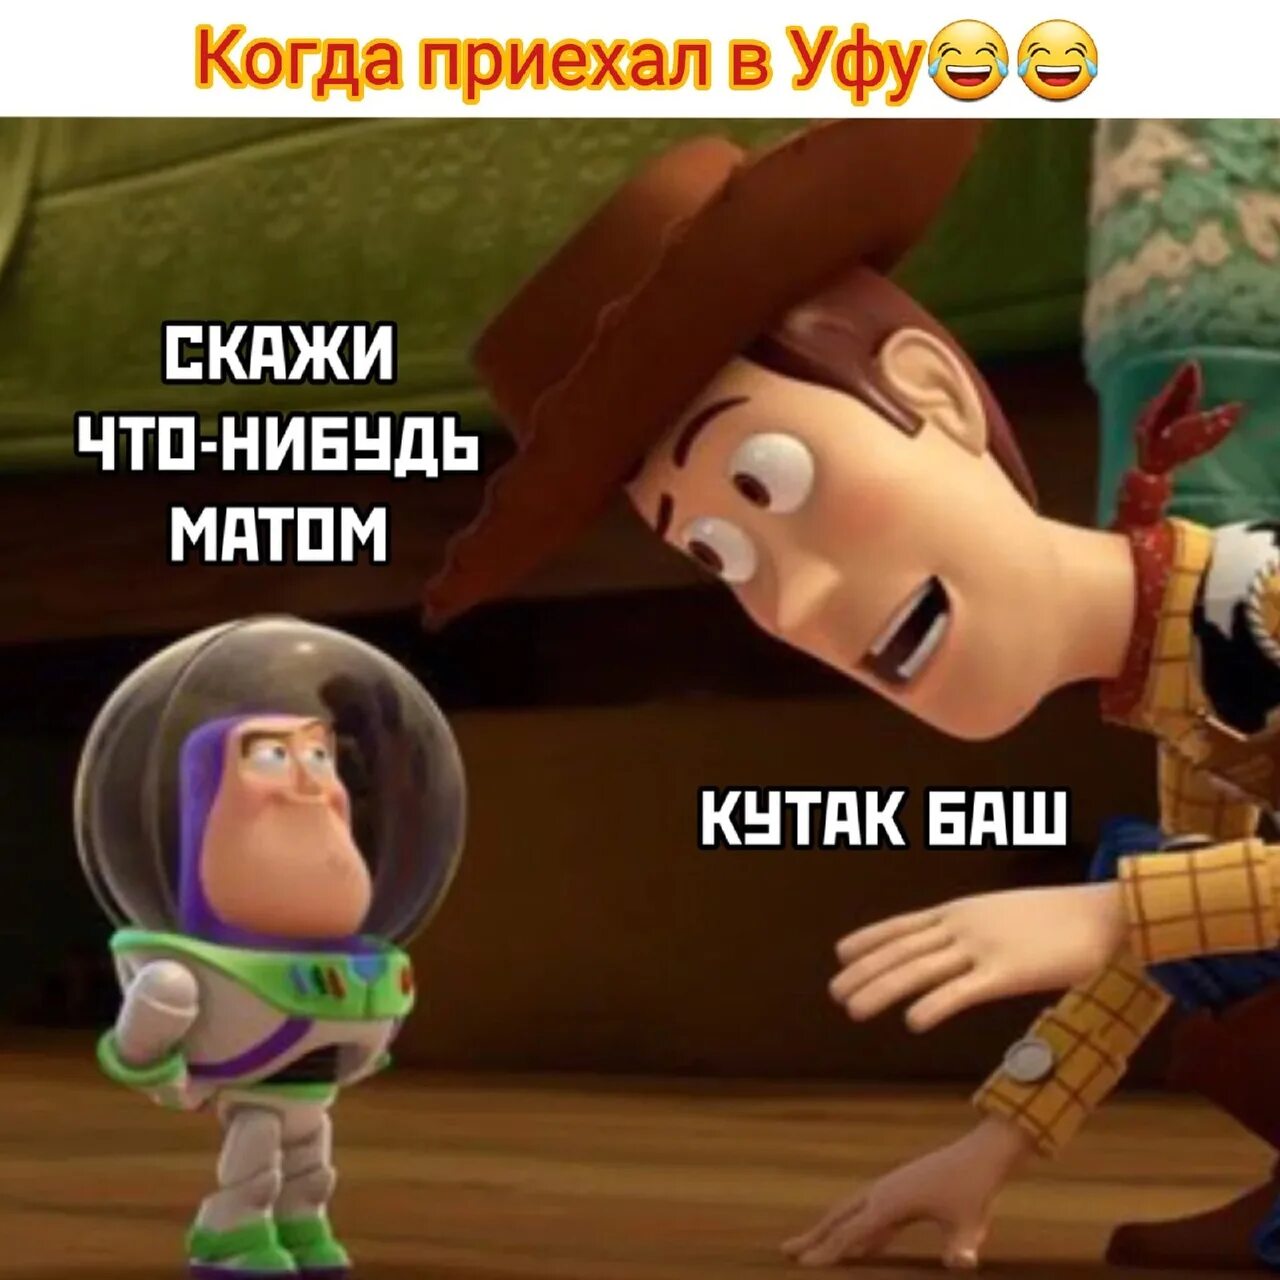 Мемы по истории игрушек. История игрушек мемы на русском. Кутакбаш. Что такое слово кутак.